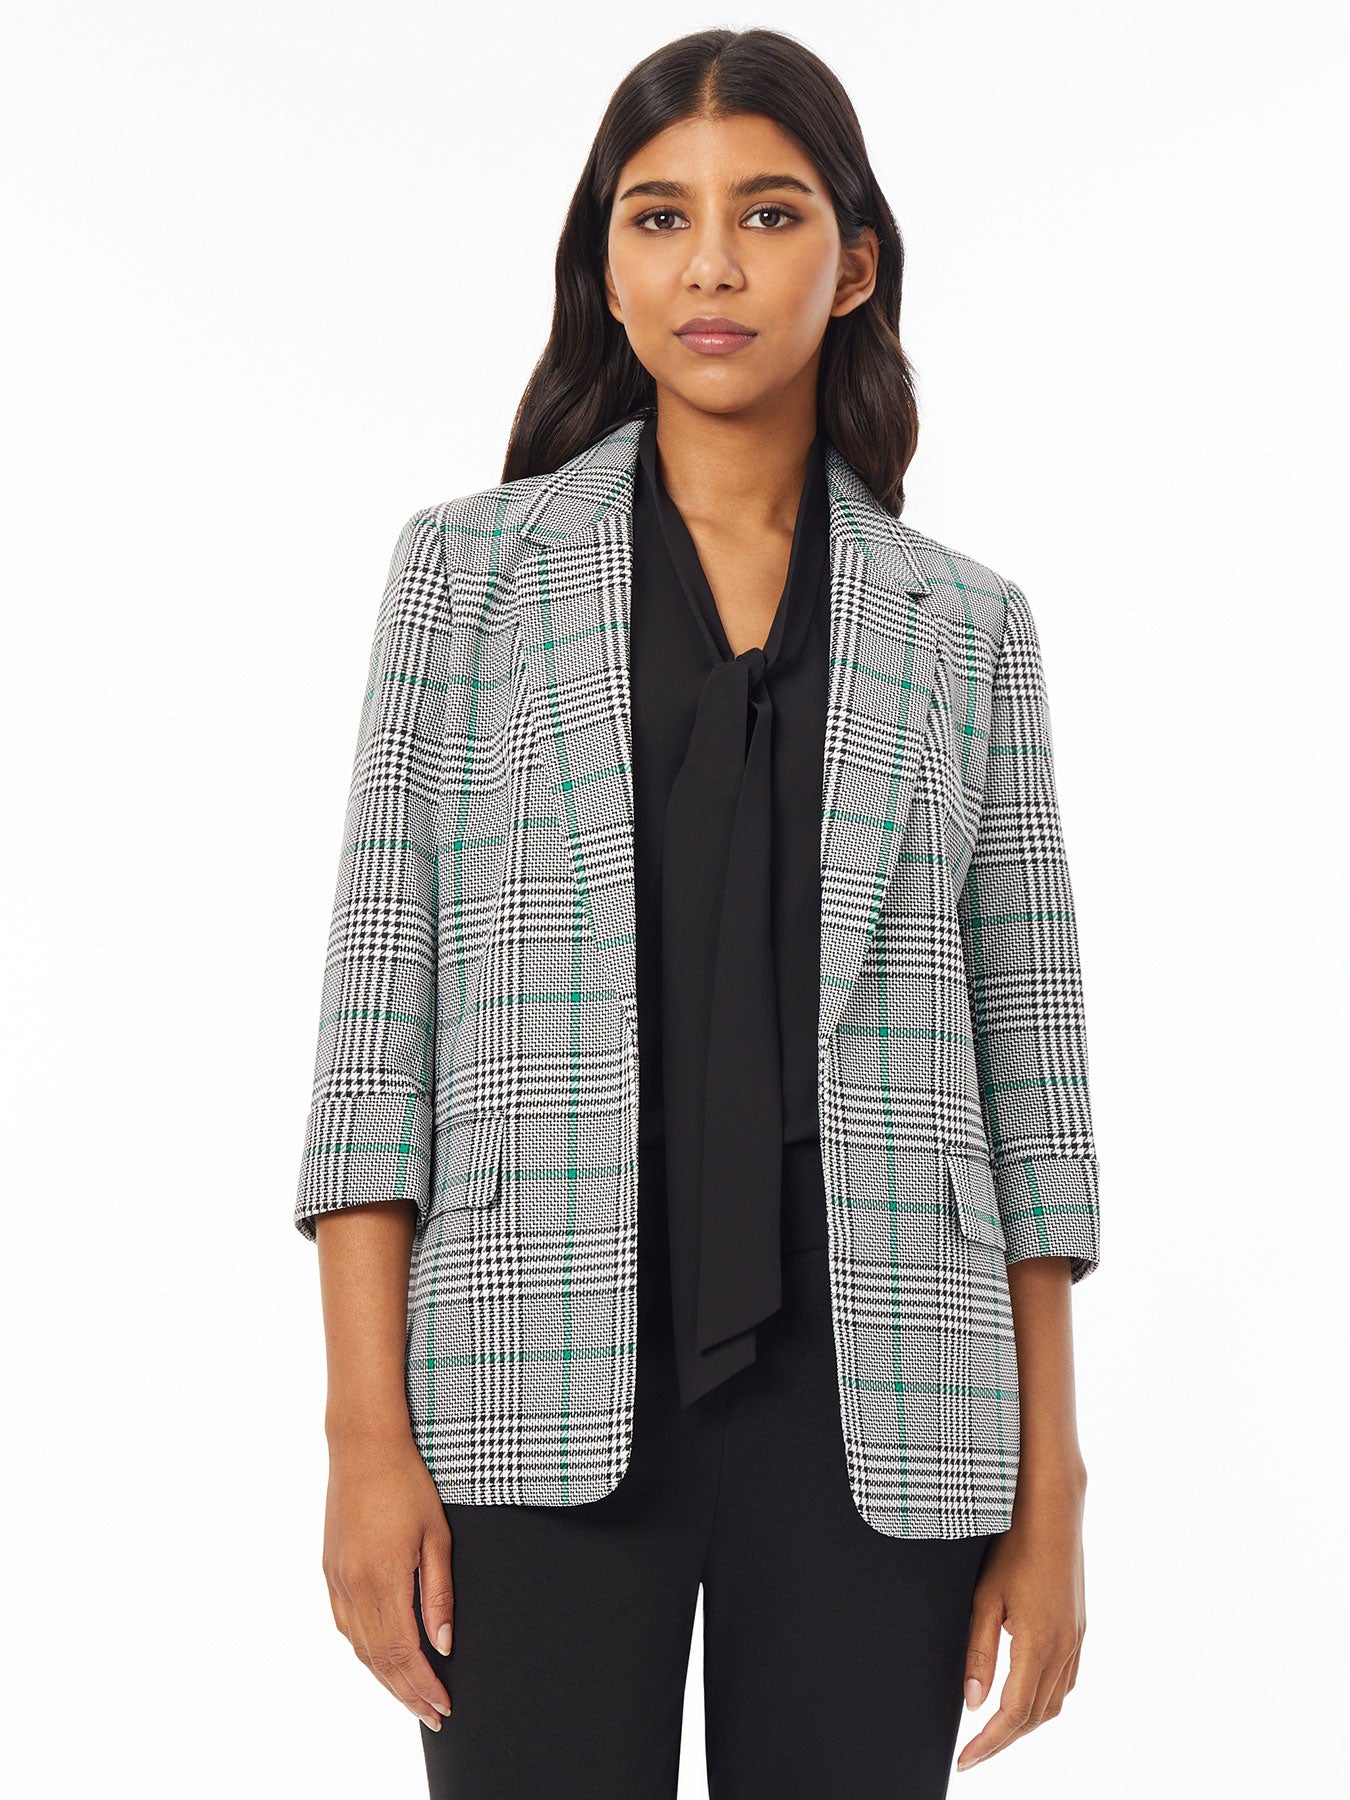 Draped Pinstripe Jacket - Women - Ready-to-Wear